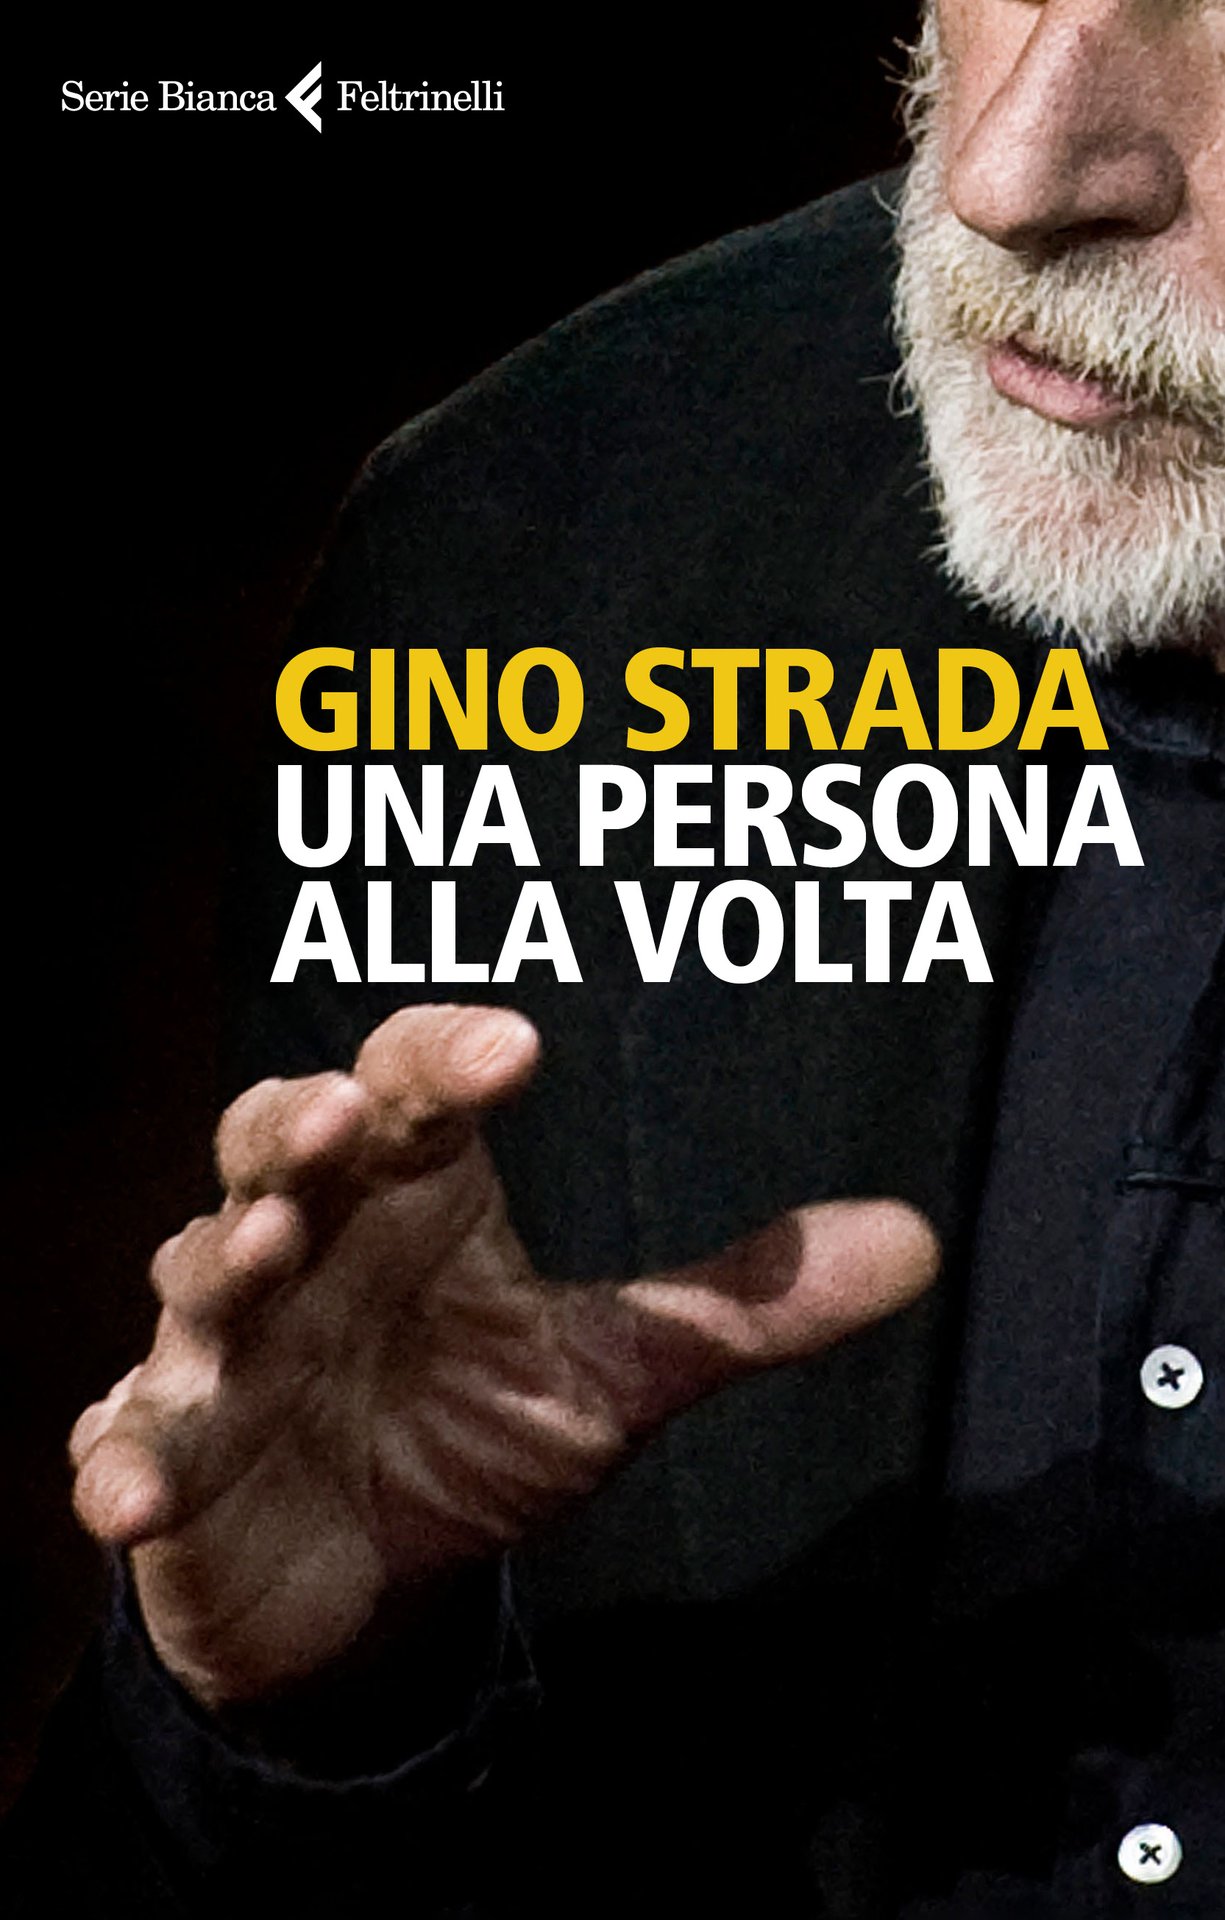 Gino Strada: Parole contro la guerra. Podcast in 3 puntate